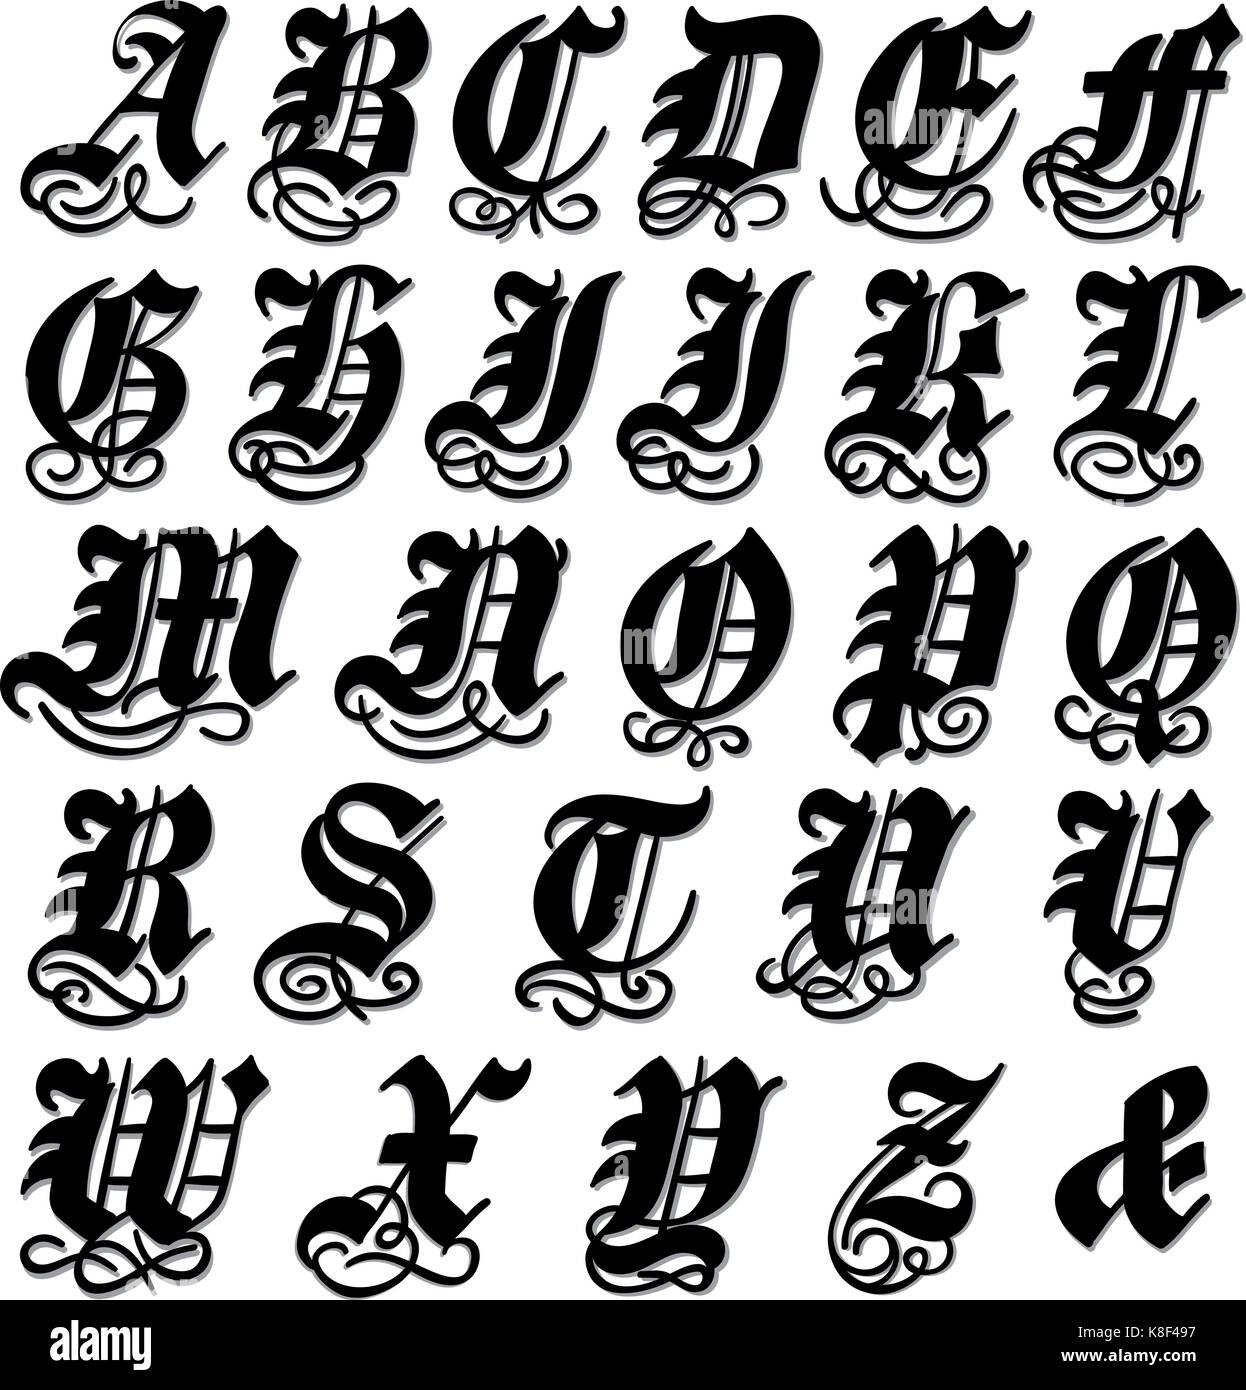 Completare maiuscolo alfabeto gotico in grassetto nero doodle con volute ornamentali e fiorisce, illustrazione di vettore isolato su bianco Illustrazione Vettoriale